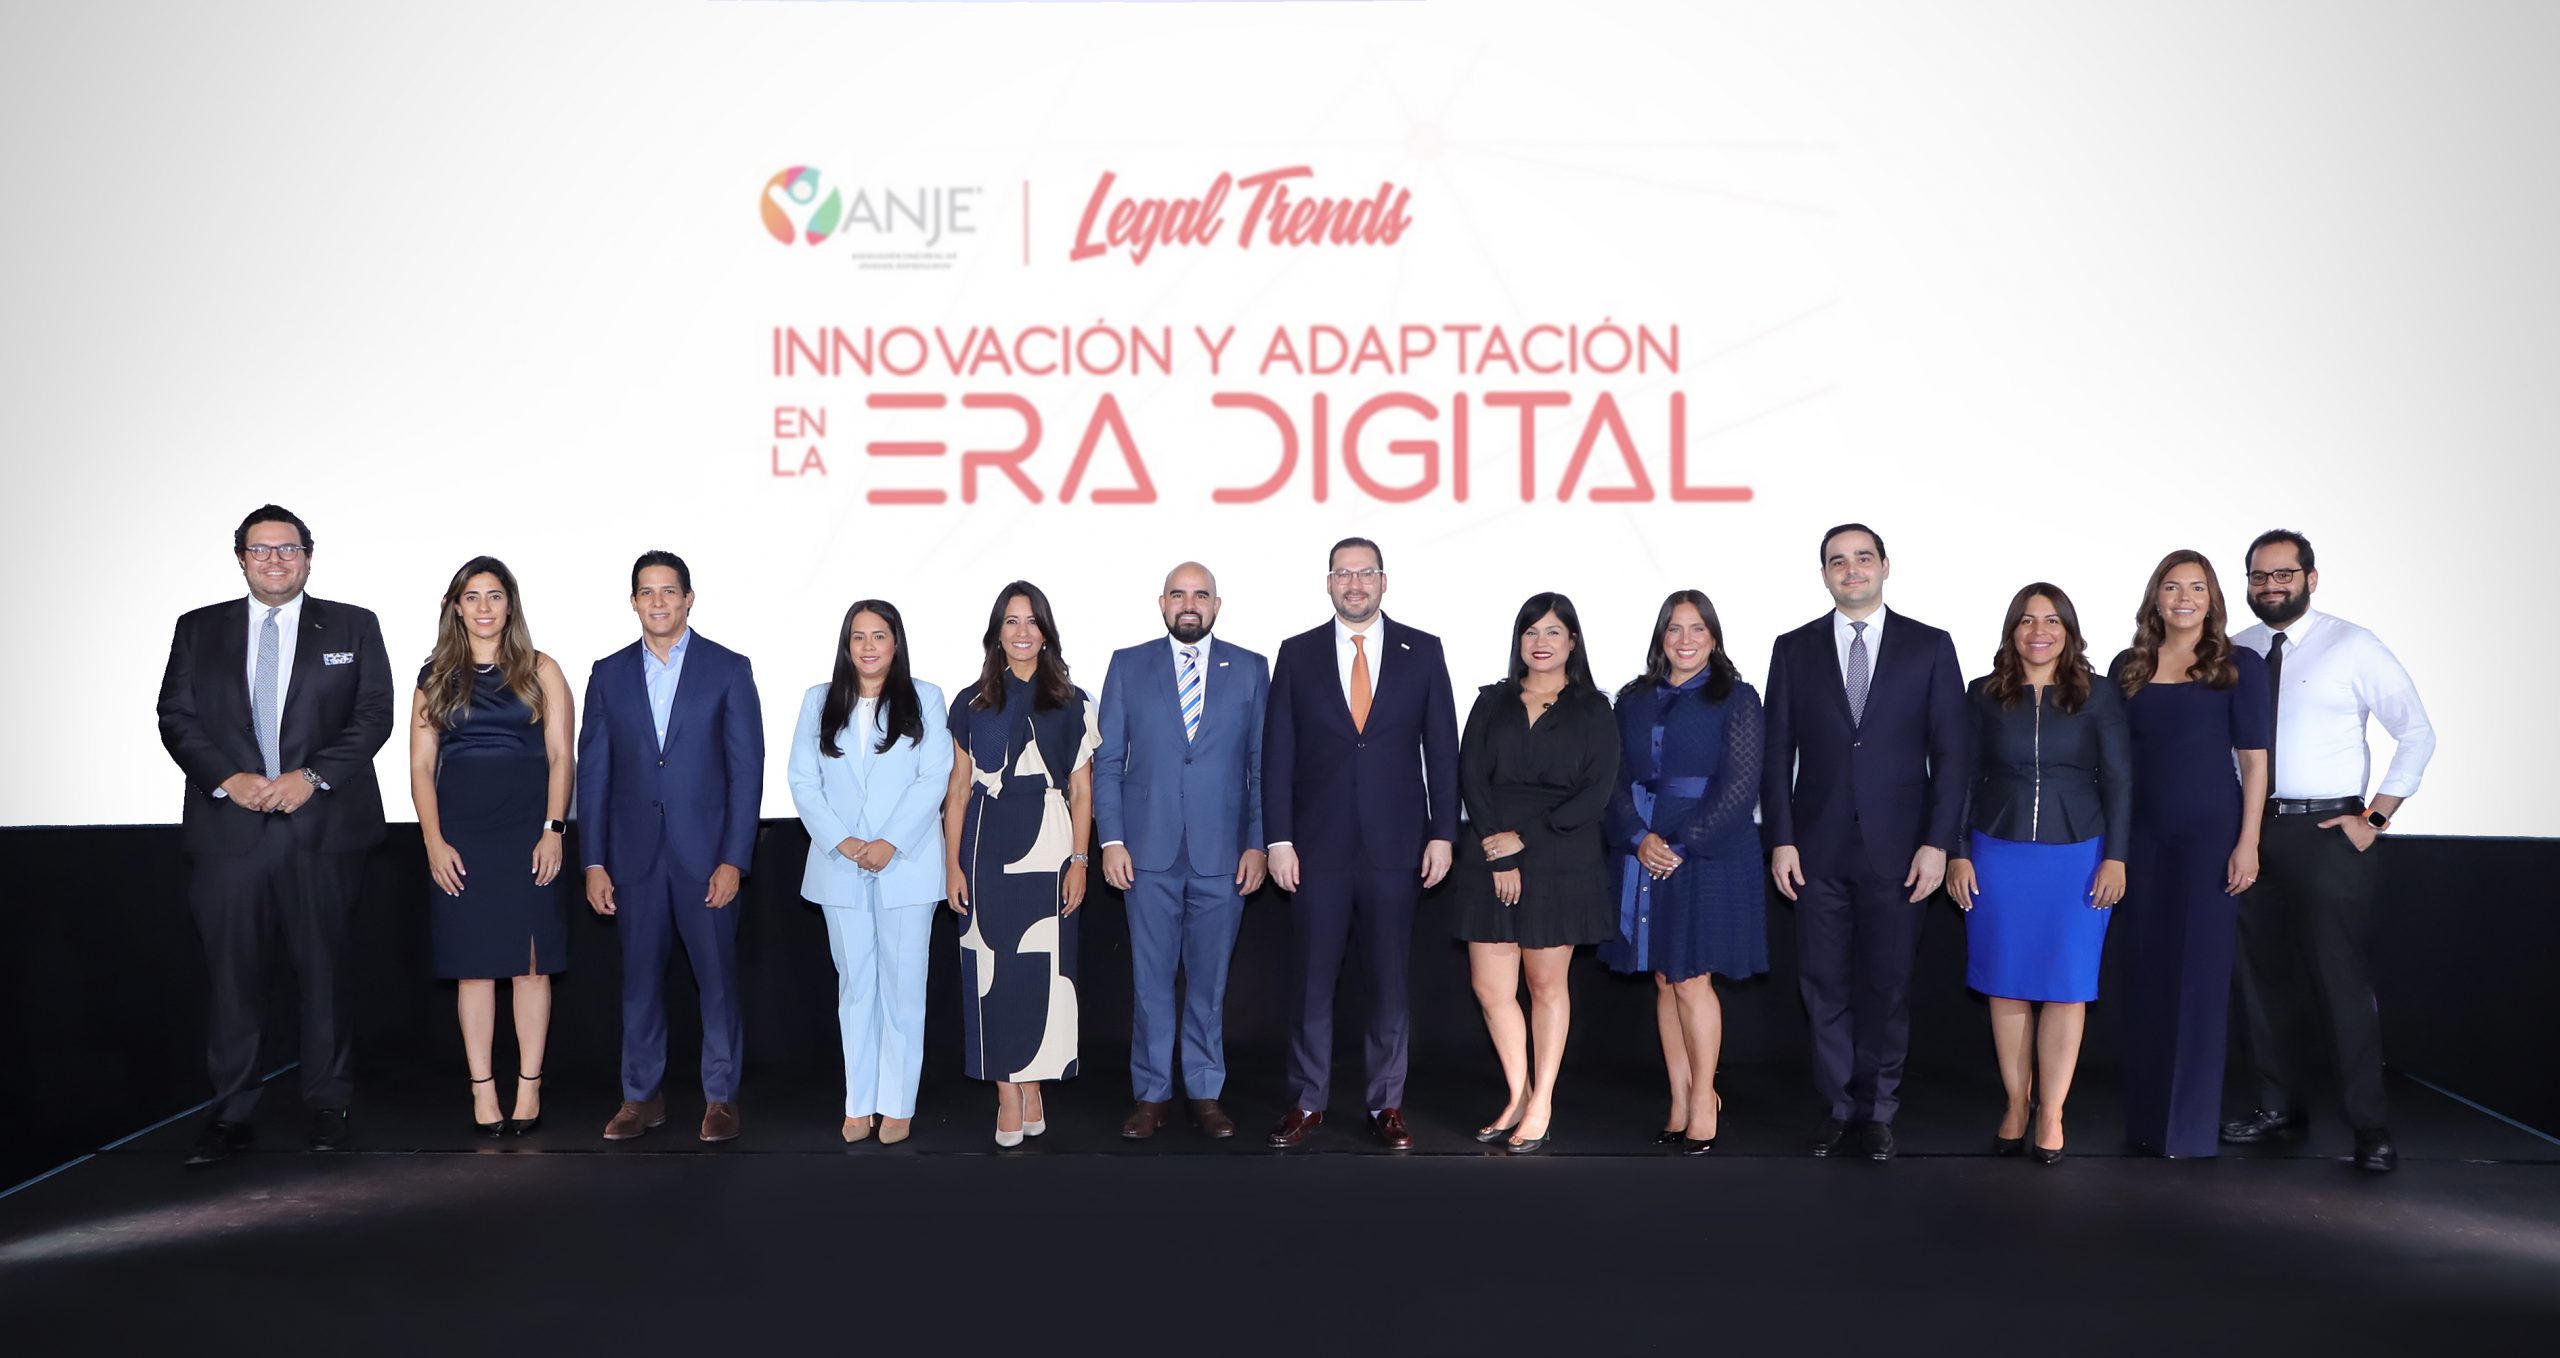 ANJE, NDP-Legal Trends 2023 “Innovacion y Adaptación en la era digital”